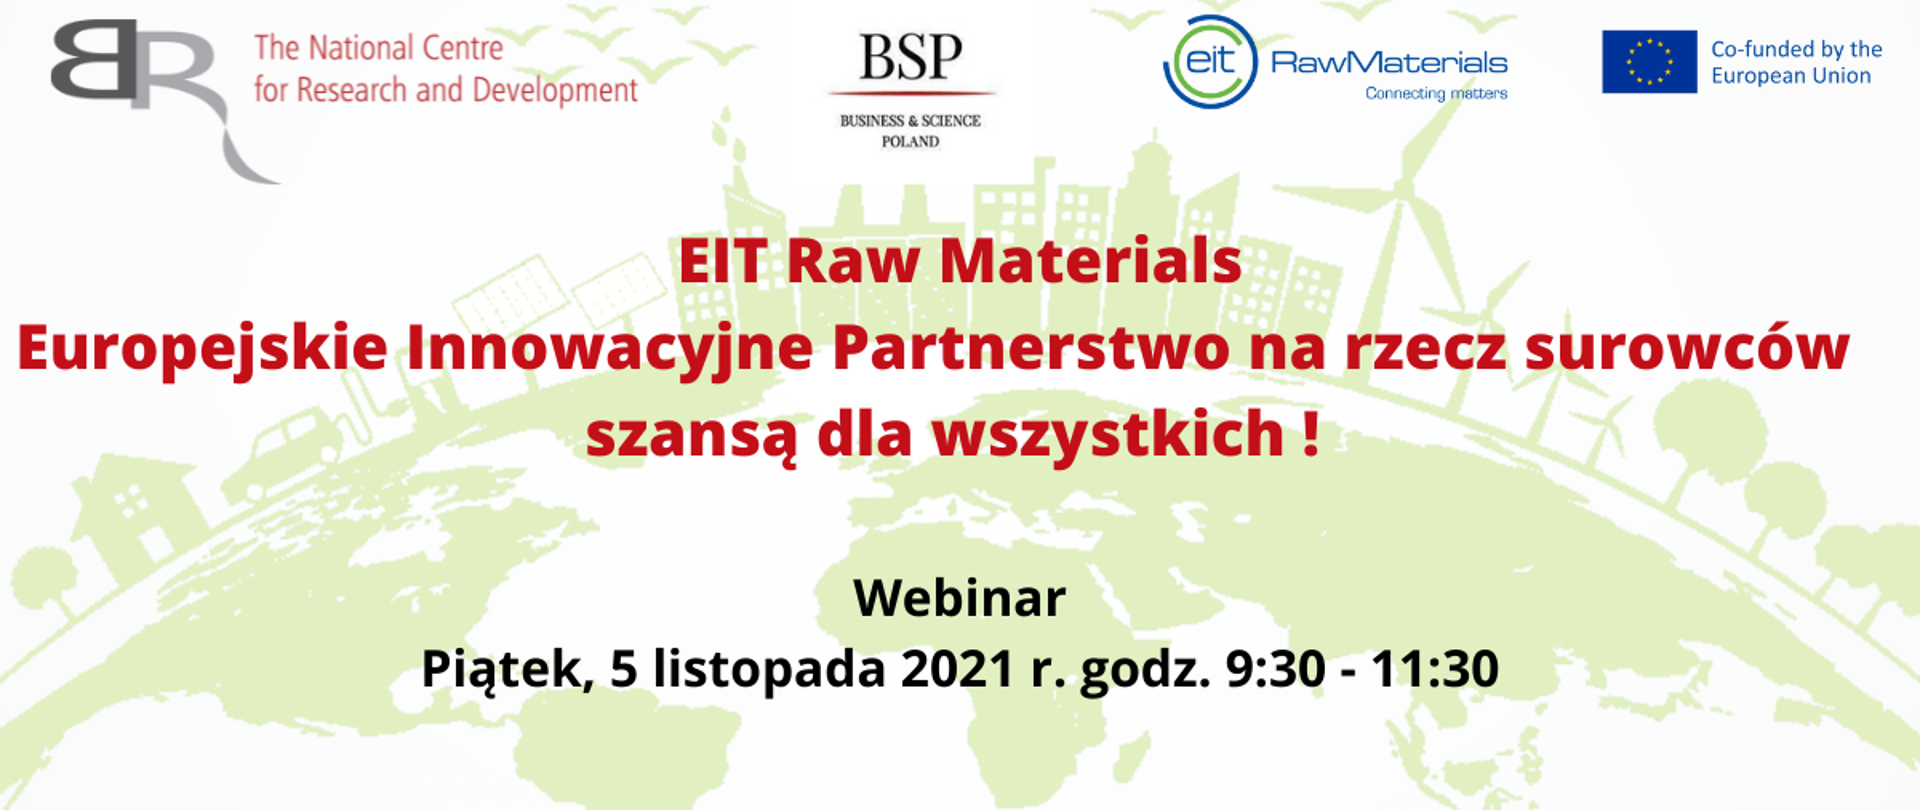 EIT Raw Materials Europejskie Innowacyjne Partnerstwo na rzecz surowców szansą dla wszystkich!